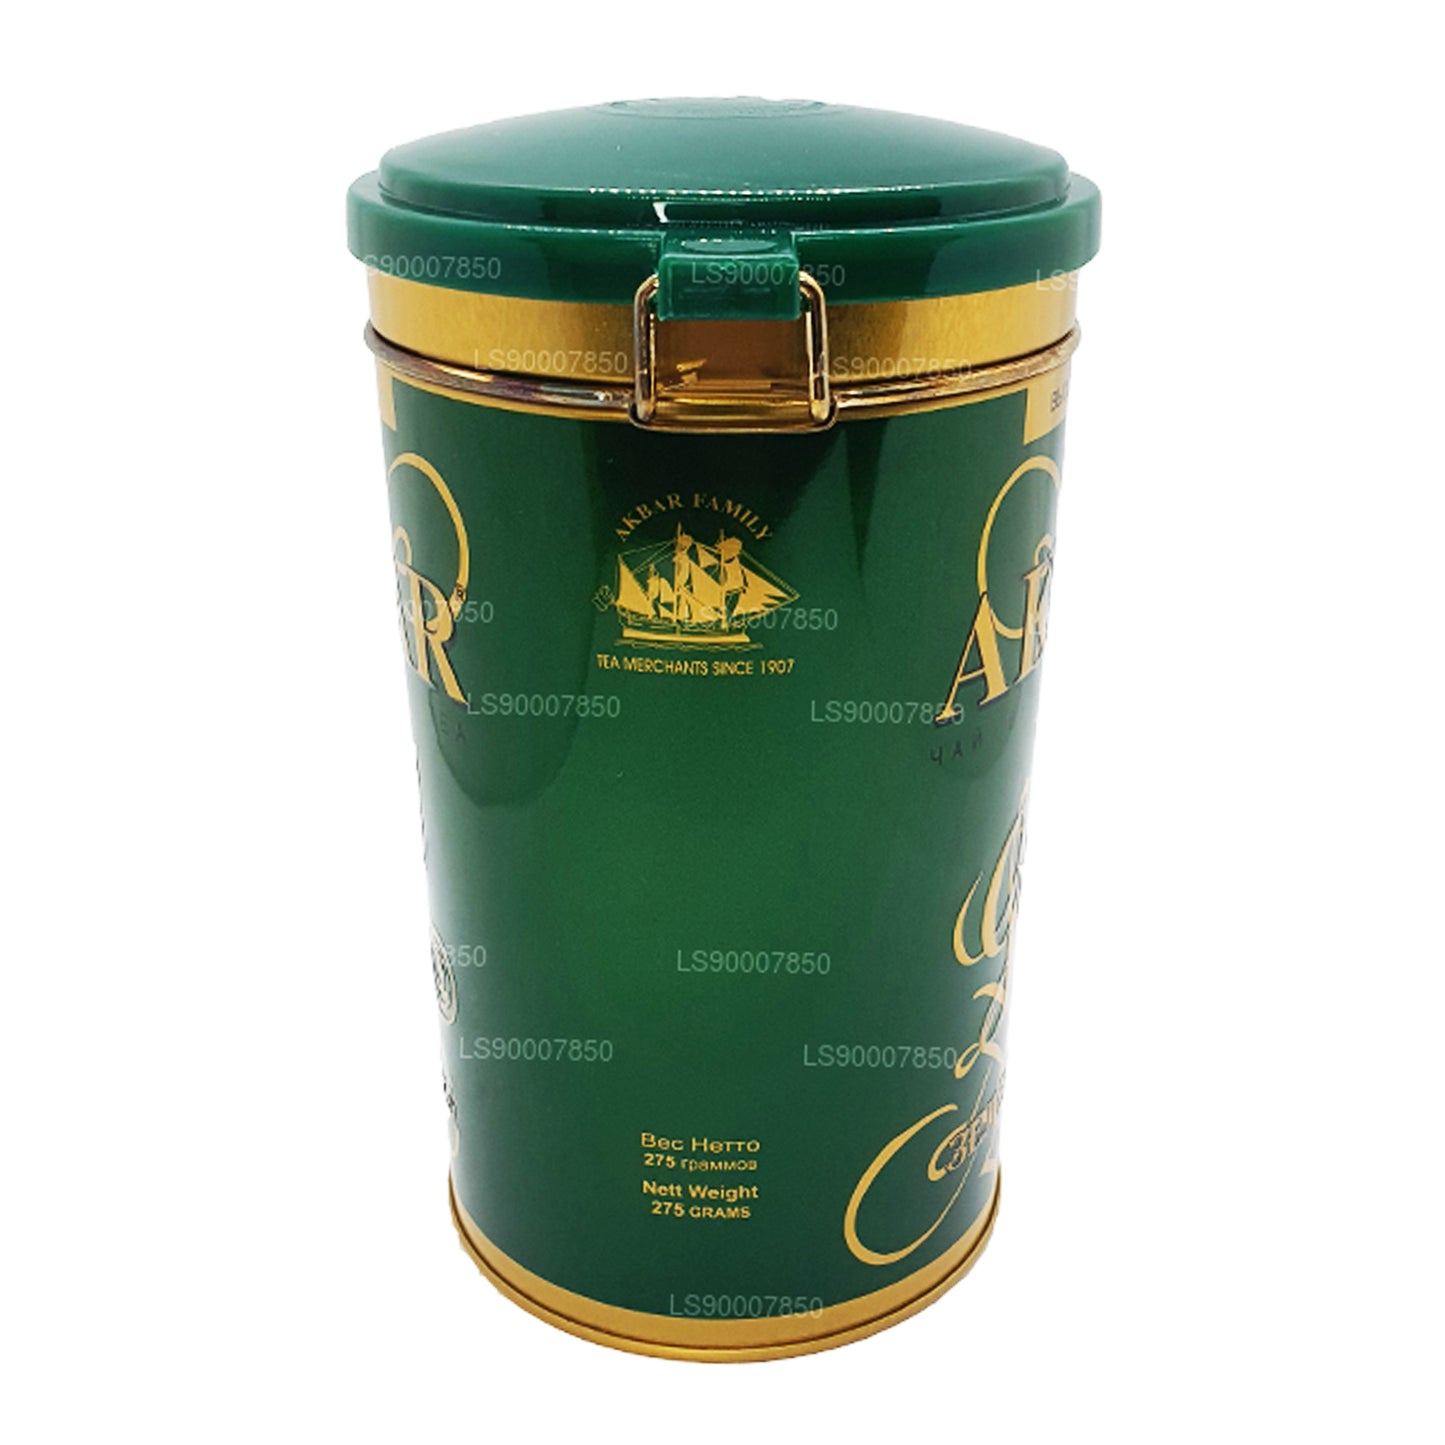 Akbar Gold Green Tea Leaf Tea (275 g) blikje